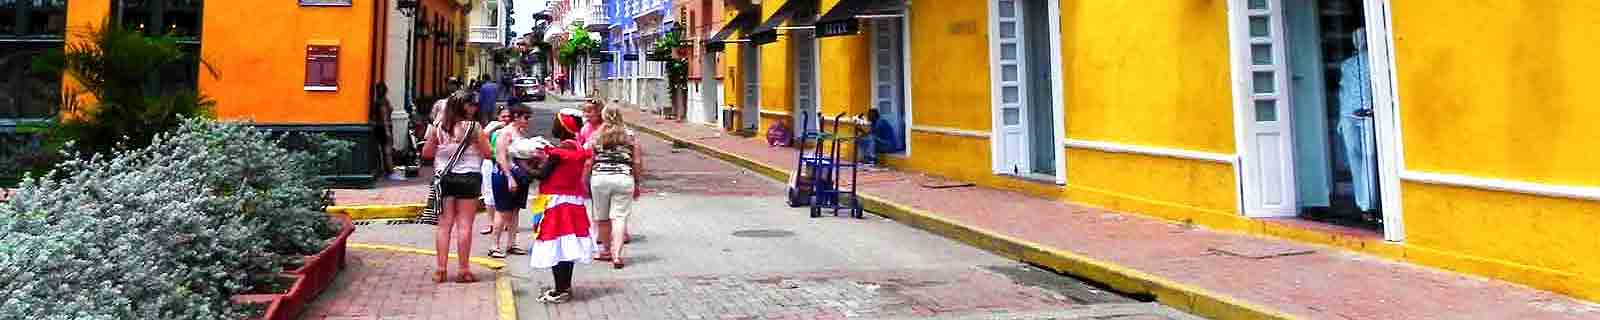 Street in Cartagena de las Indias by IQCruising